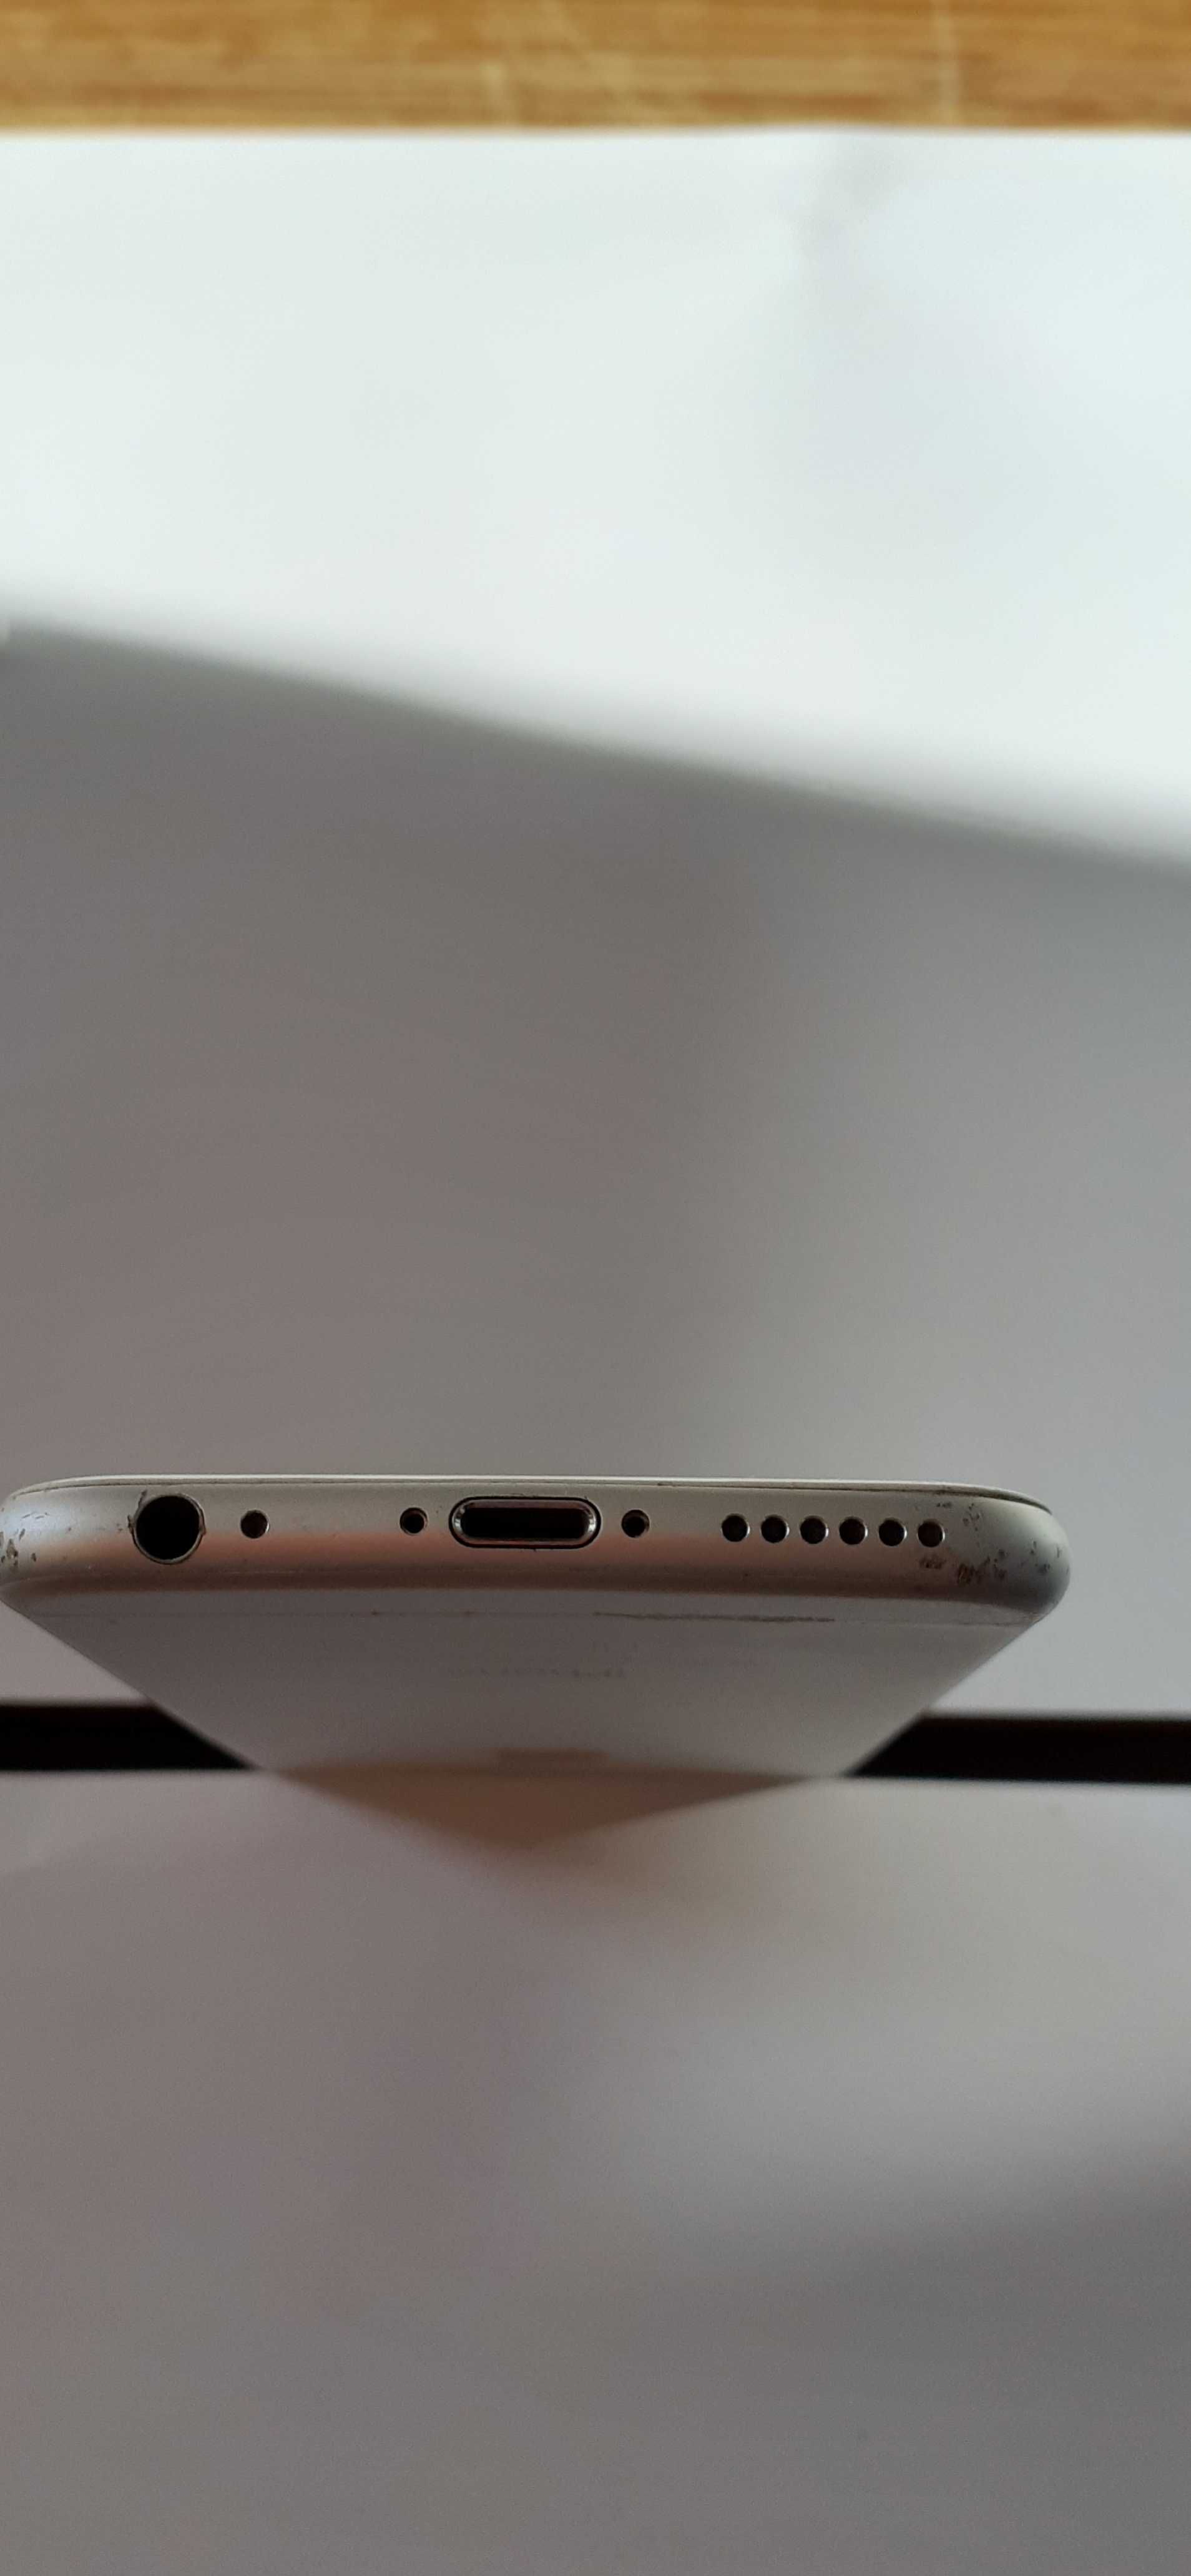 Телефон Apple IPhone 6 A1586 16GB серебрянный заблокирован